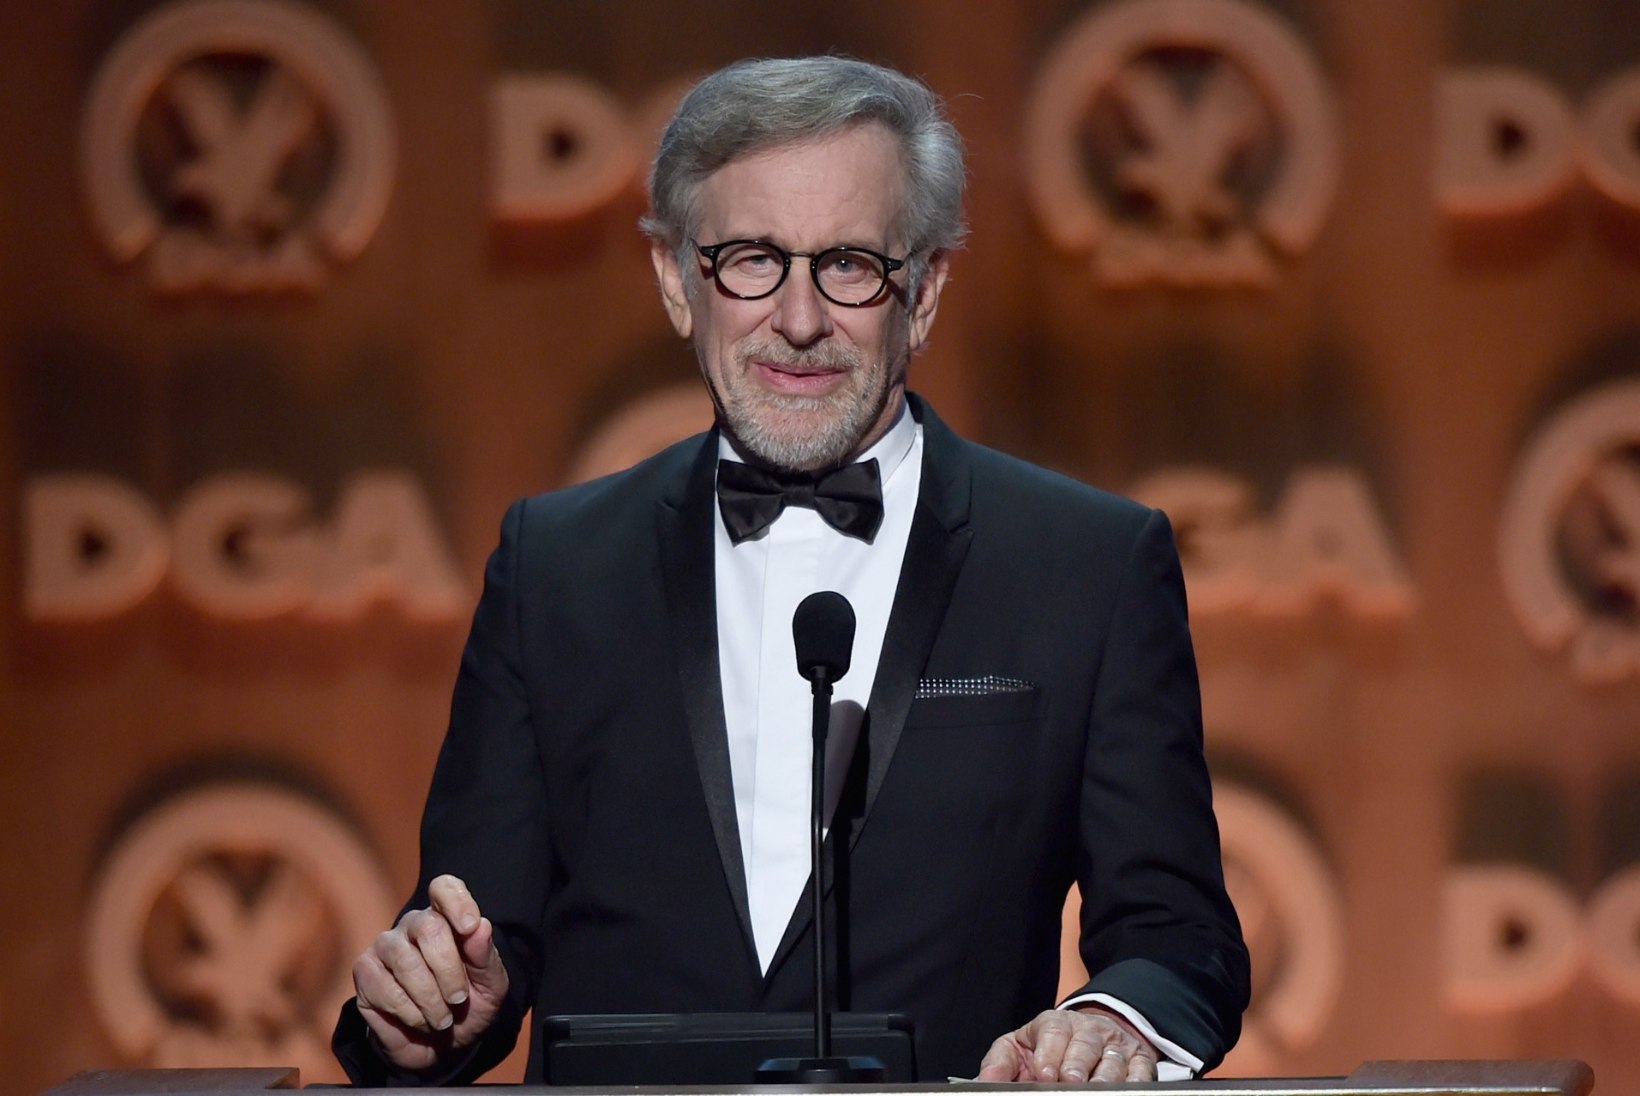 Spielbergi stuudio lööb Disneyst lahku